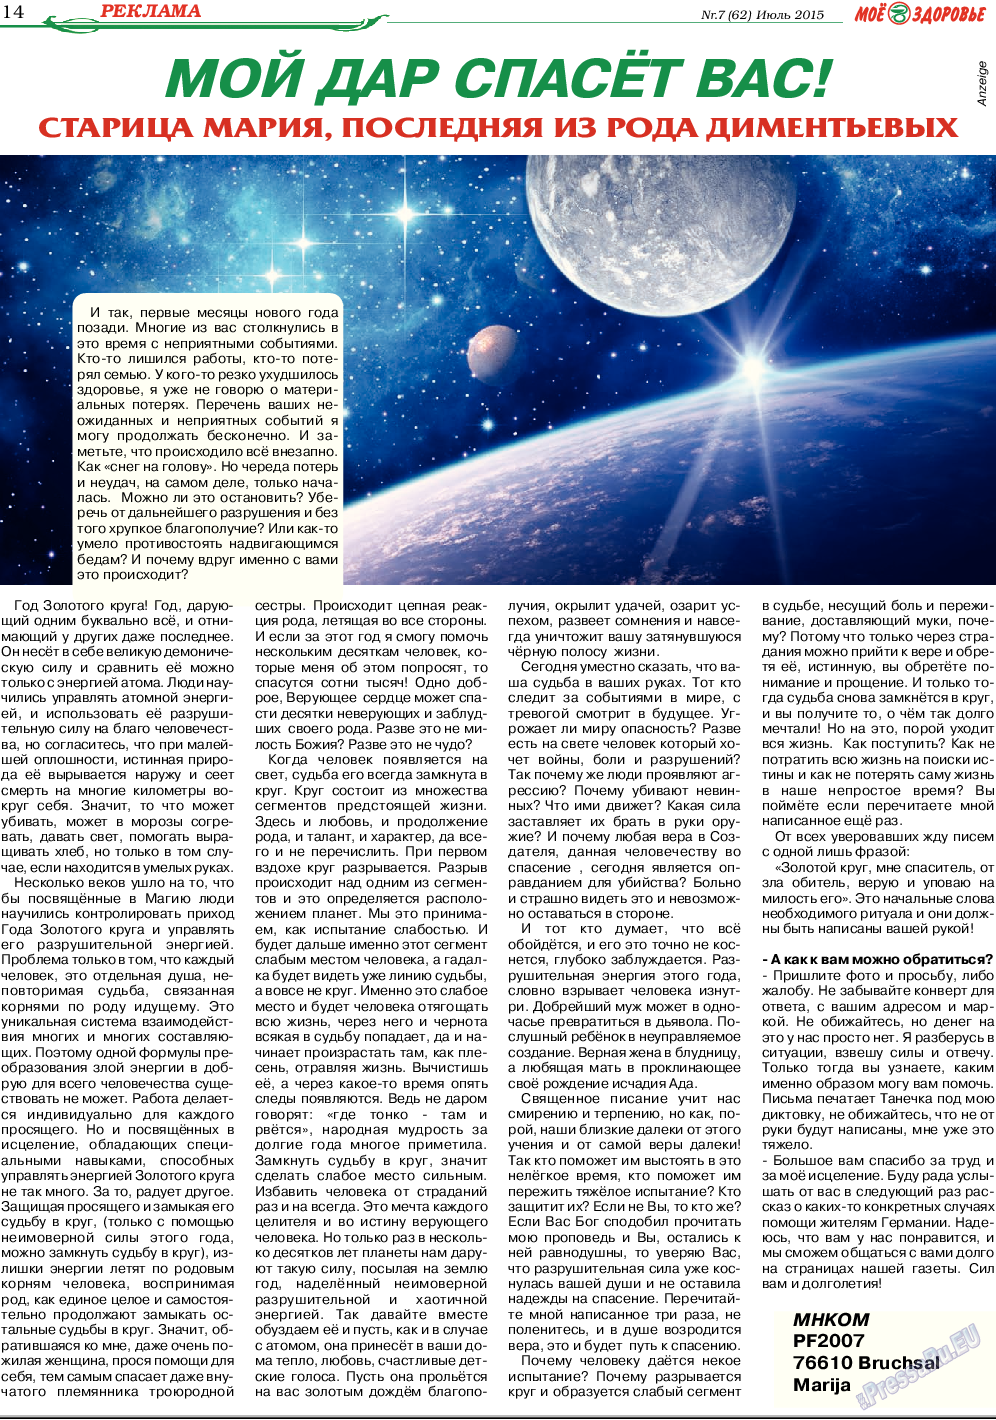 Кругозор, газета. 2015 №7 стр.14